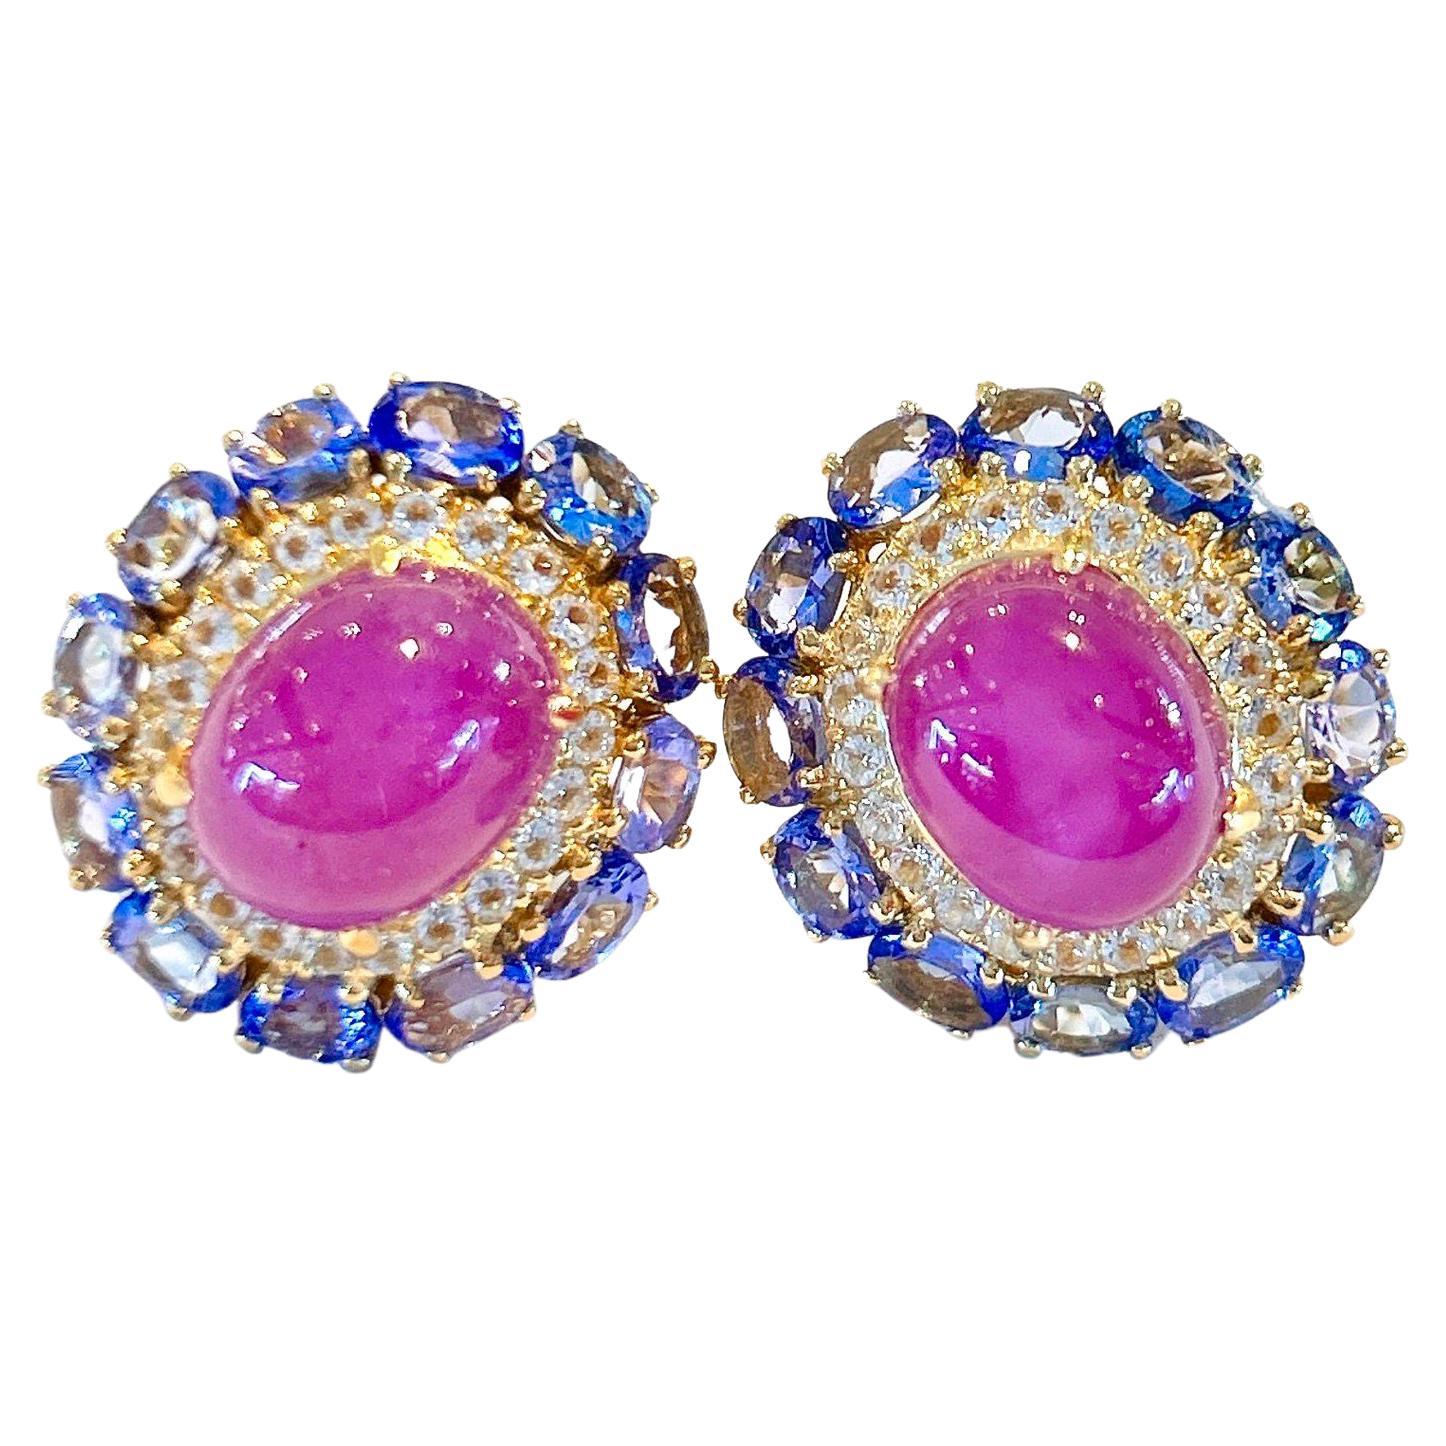 Bochic “Capri” Ruby & Tanzanite Clip on Earrings Set in 22k Gold & Silver